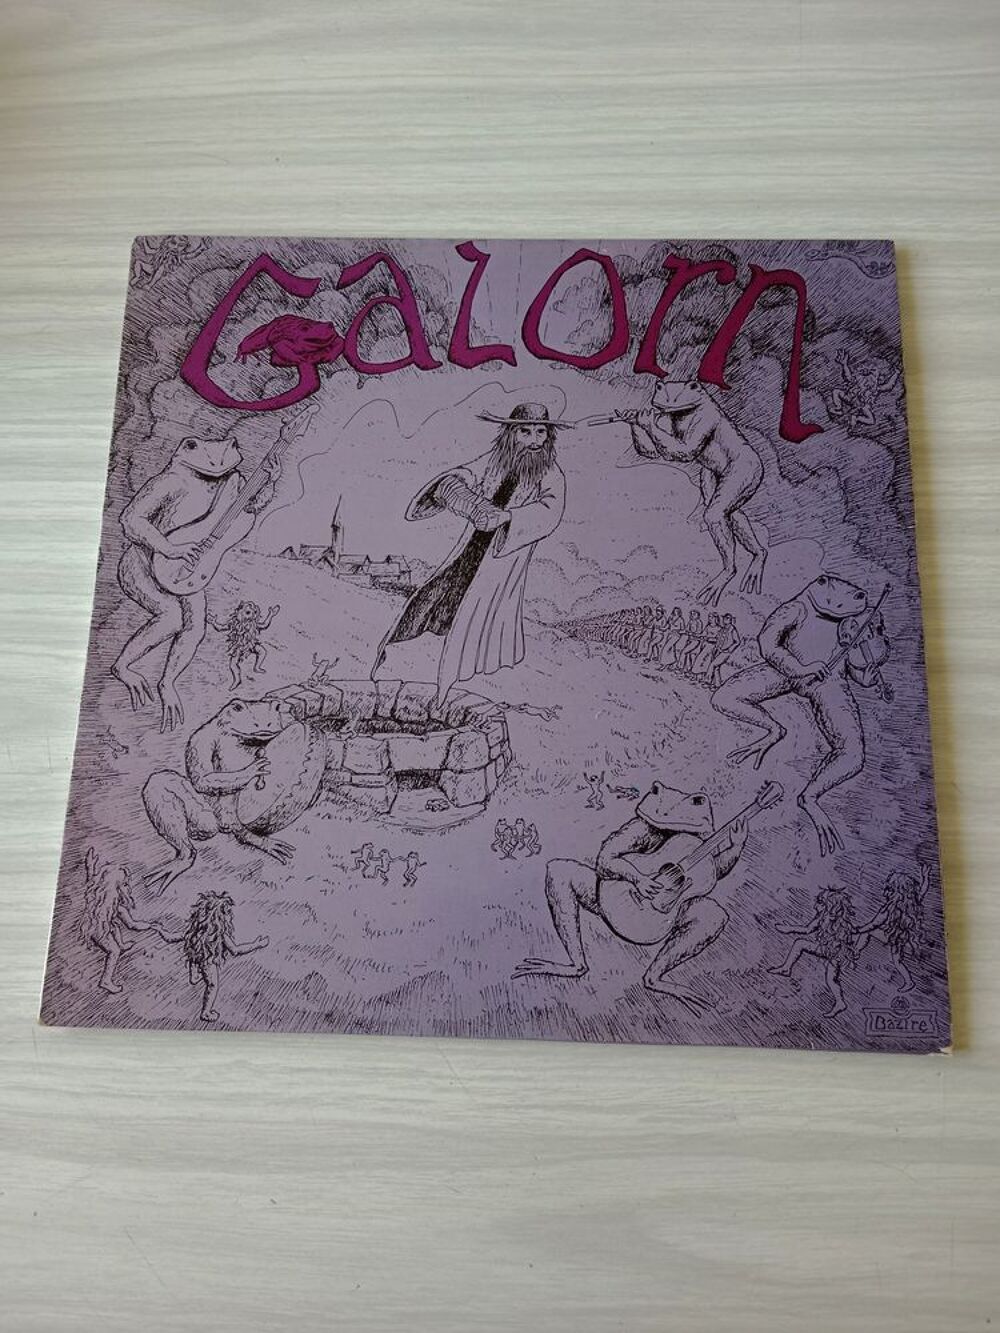 33 tours GALORN CD et vinyles